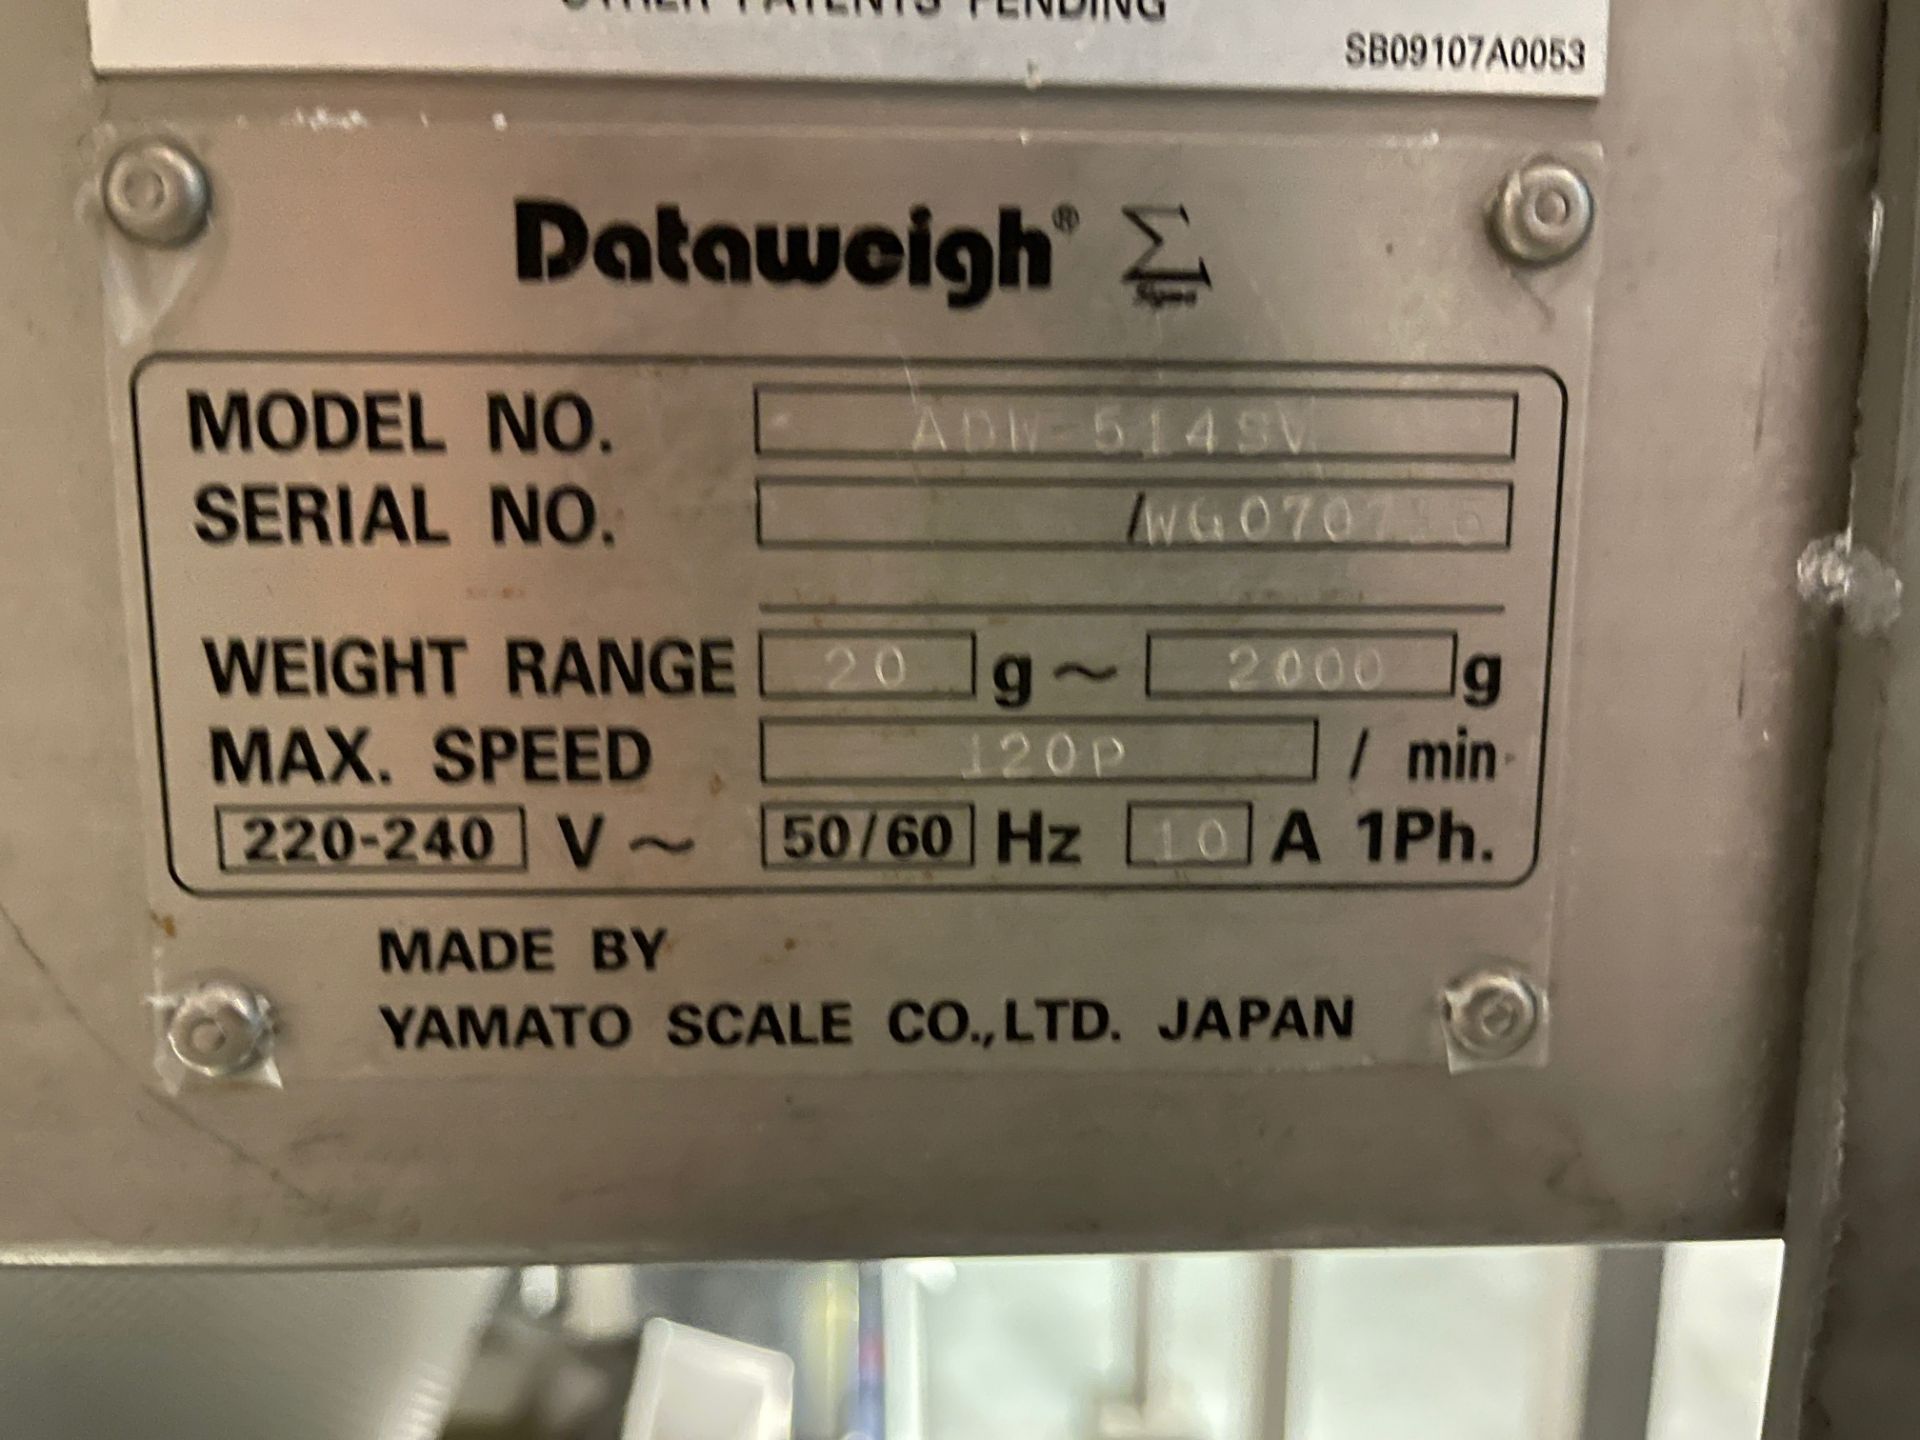 Yamato Dataweigh 14-Head Dimple Bucket Multi-head Scale, Model ADW-514SV, S/N WG0707 | Rig Fee $2000 - Image 6 of 8